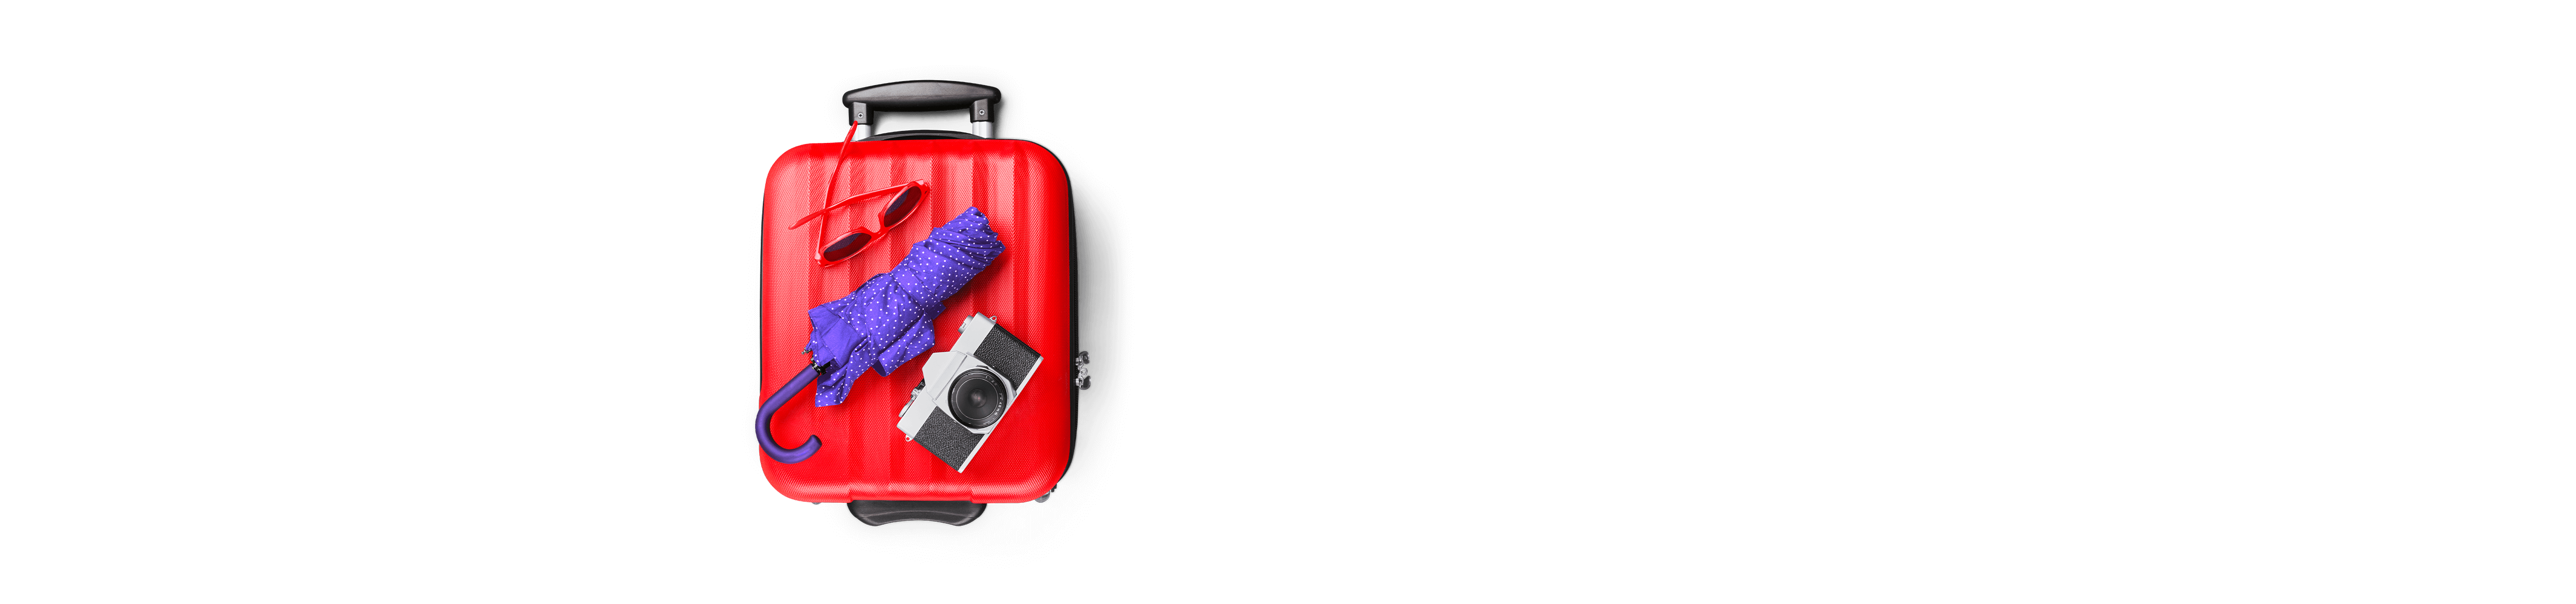 Roter Koffer mit Sonnenbrille, Schirm und Kamera